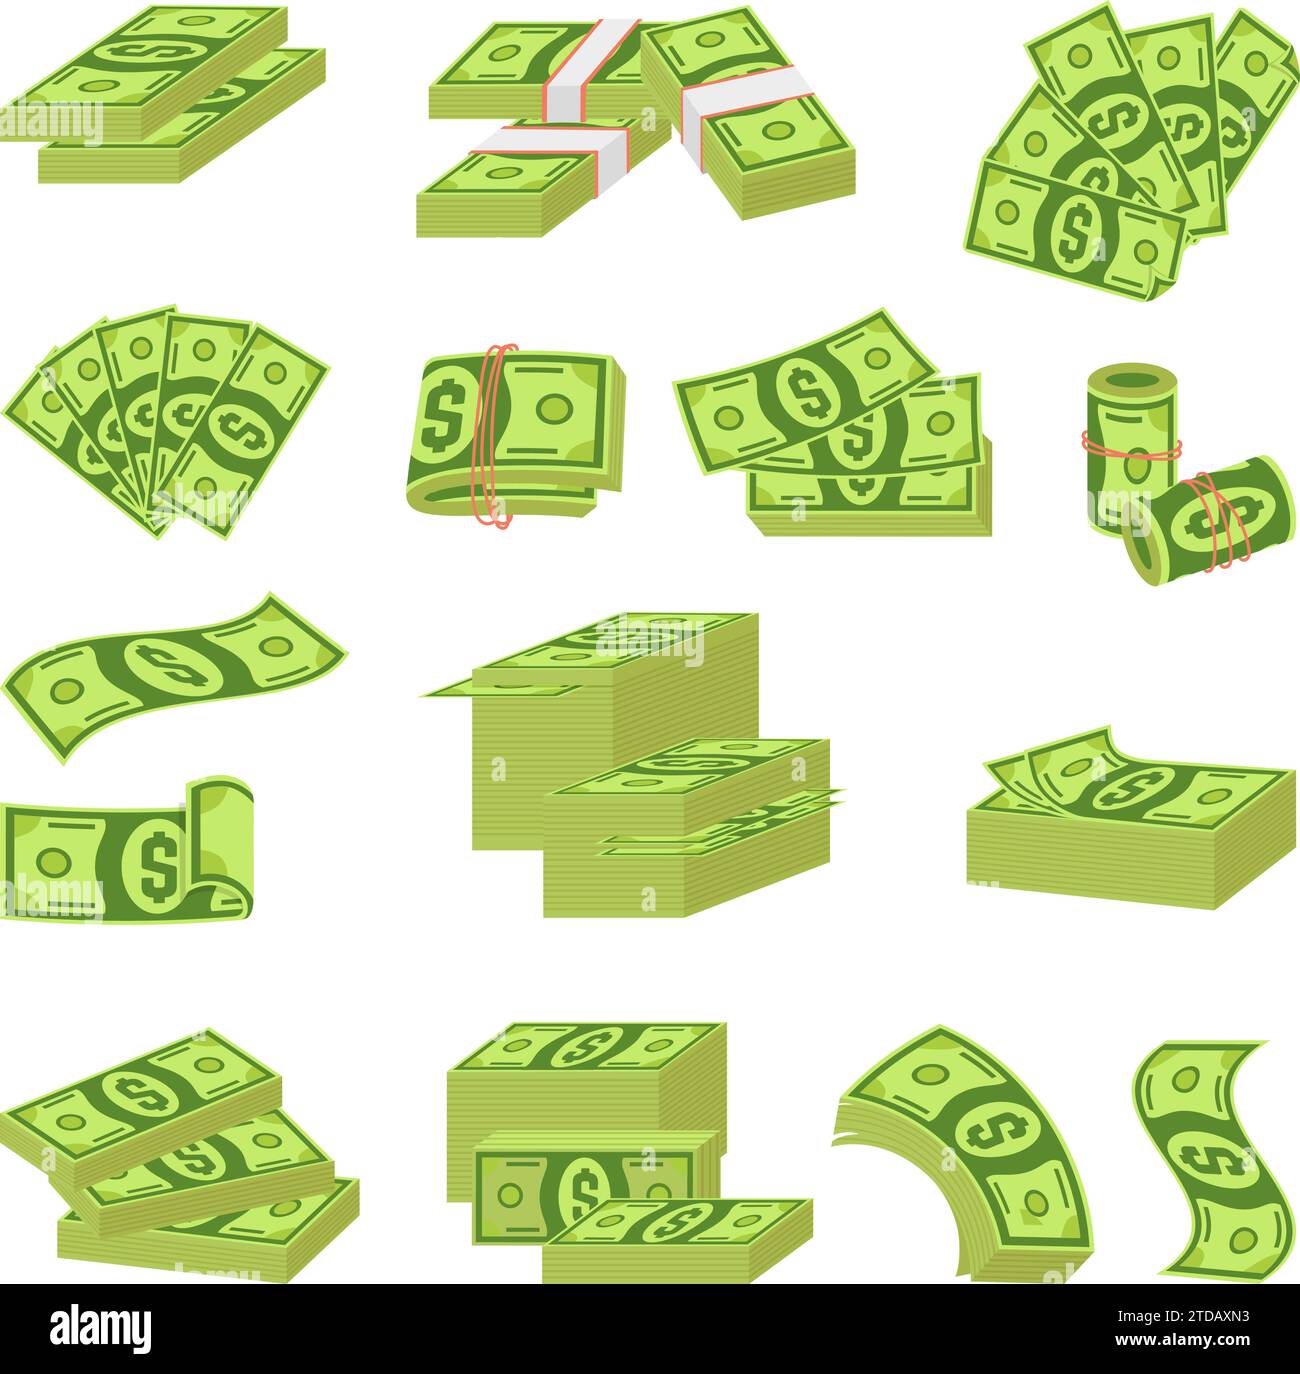 Soldi dei cartoni animati. Abbondanza di dollari verdi in fan, pile e pile. Elementi finanziari e bancari. Banconote isolate, insieme di vettori di valuta neoterica Illustrazione Vettoriale